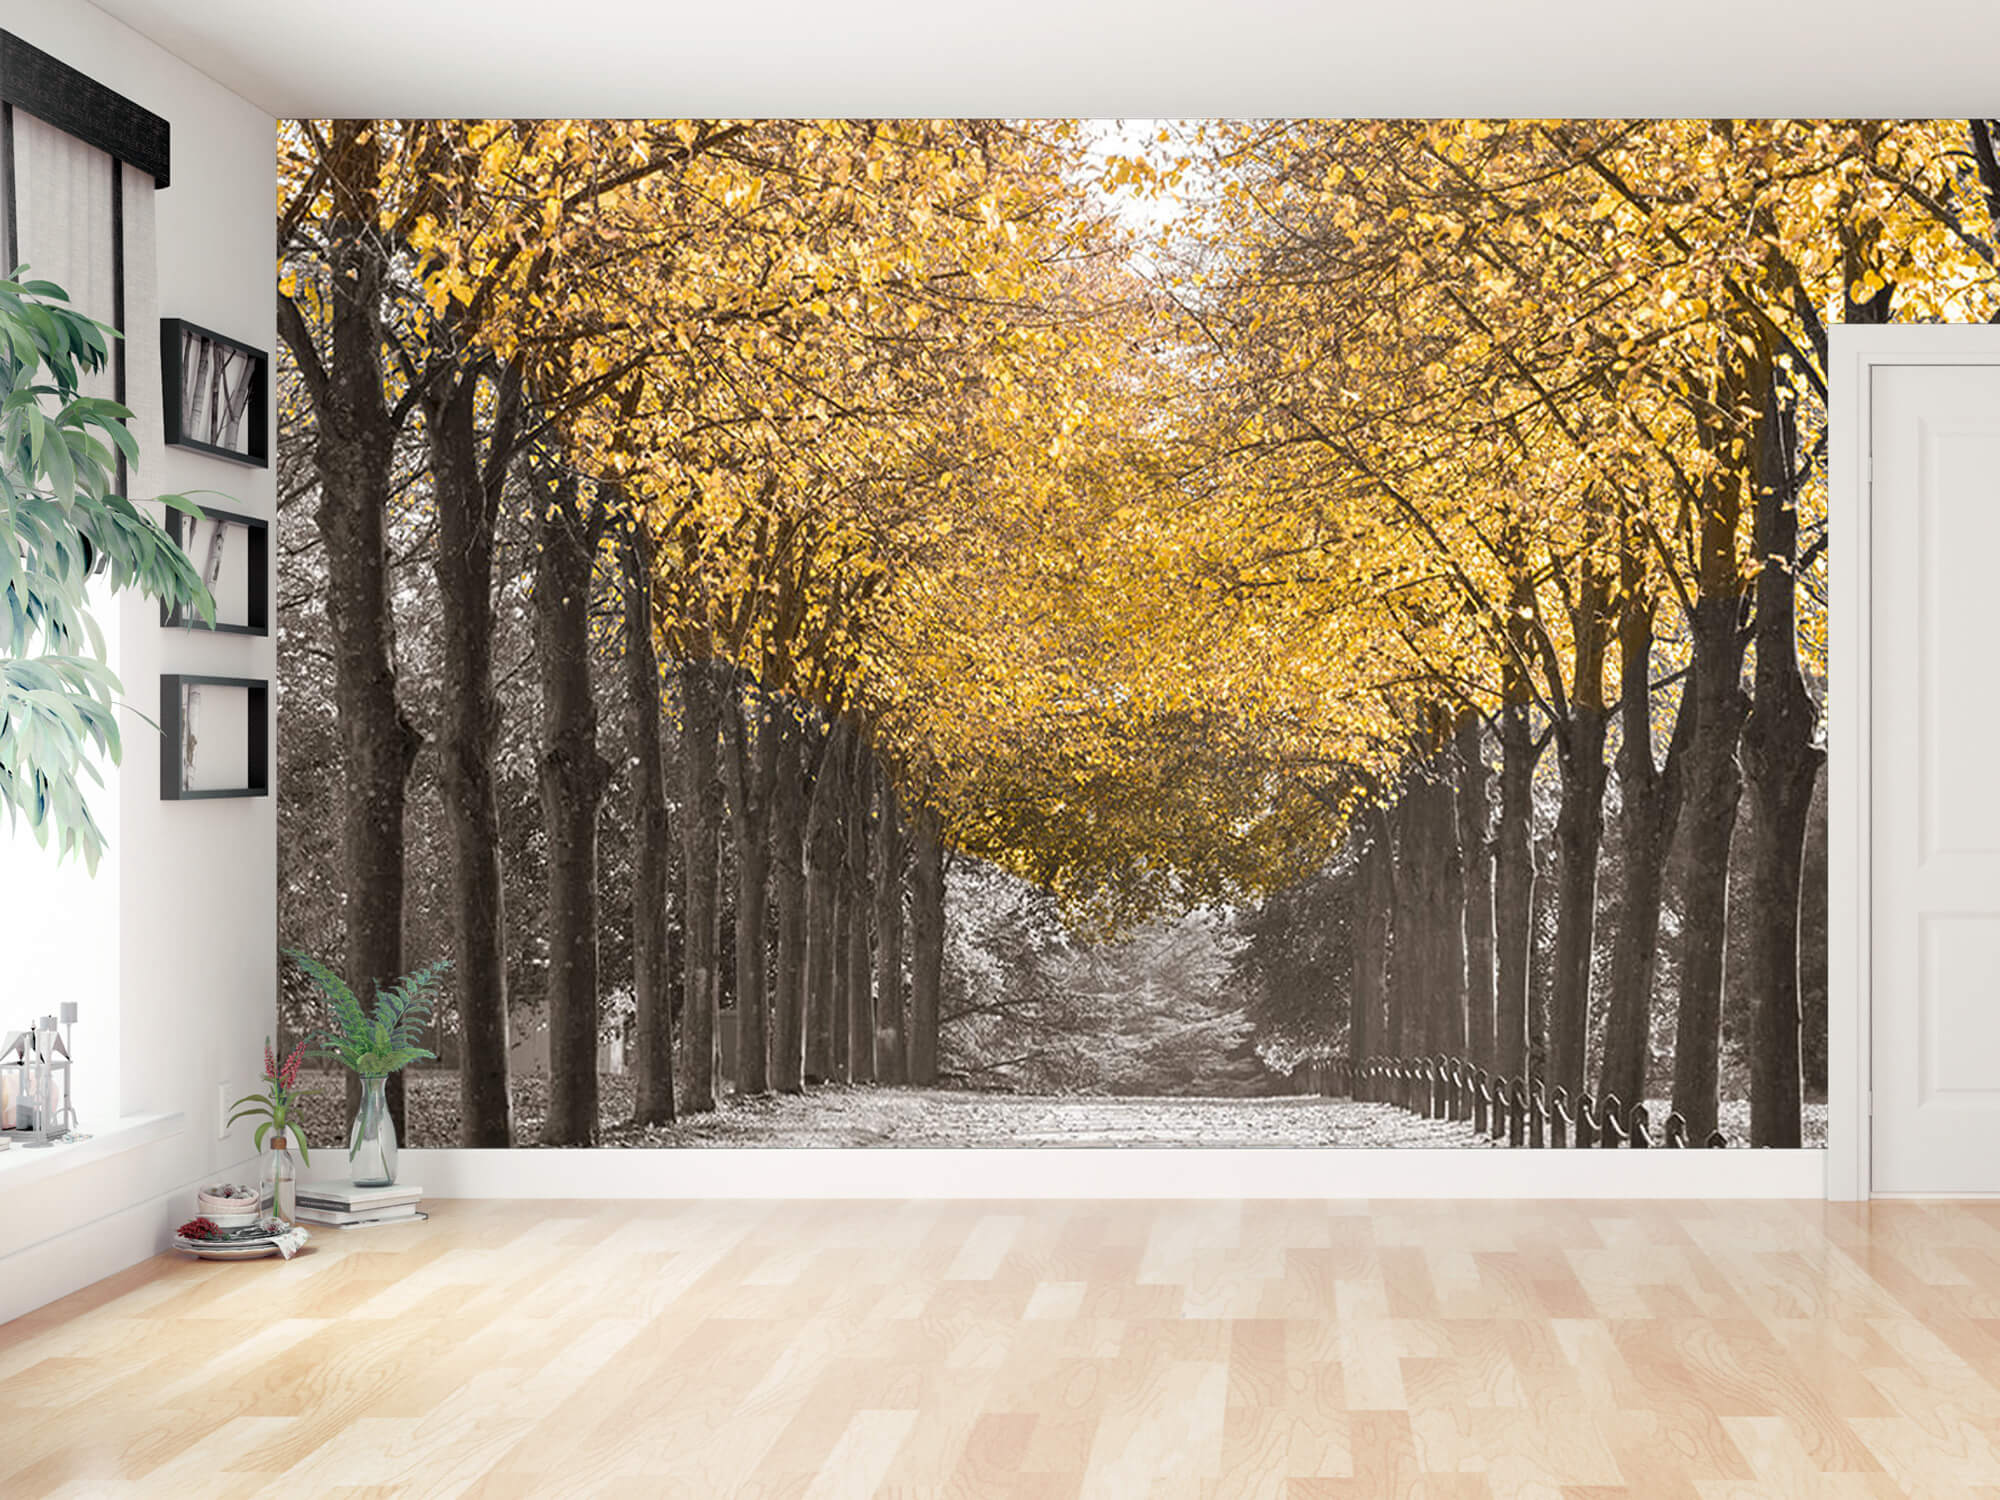  Papel pintado con Camino entre los árboles - Salón 15